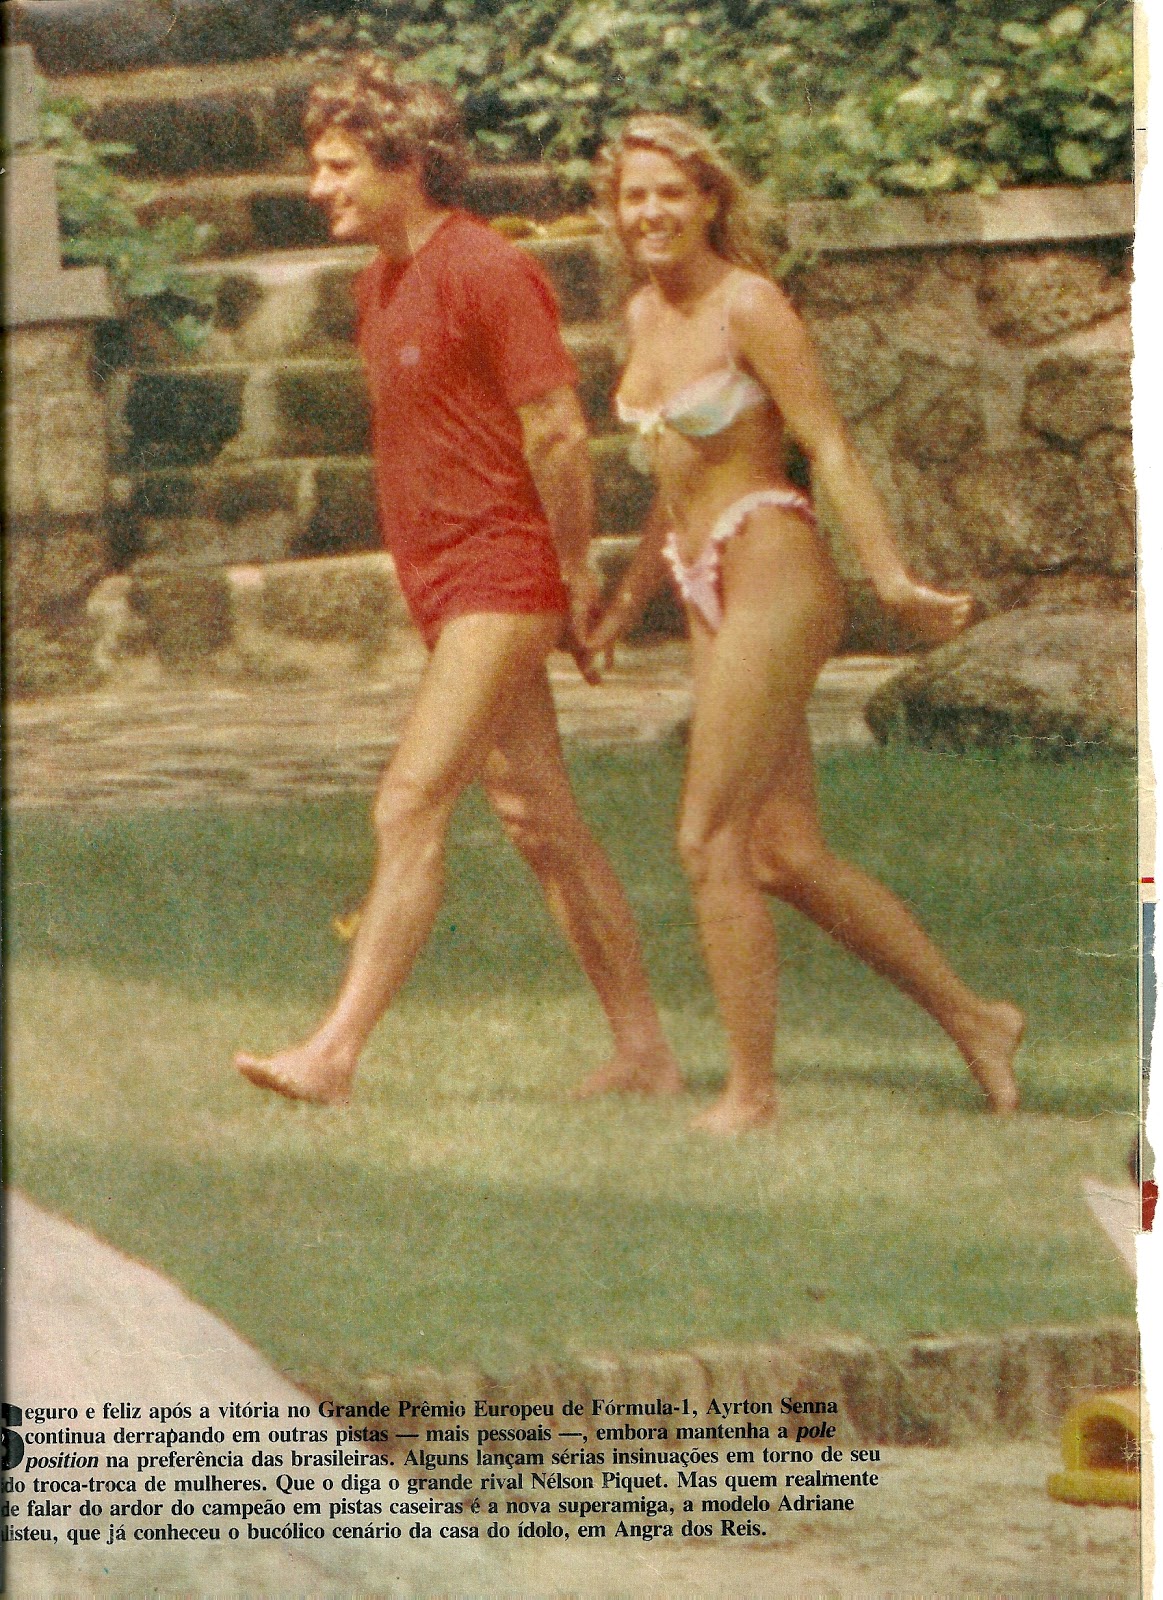 Ayrton and Adriane at Angra dos Reis.